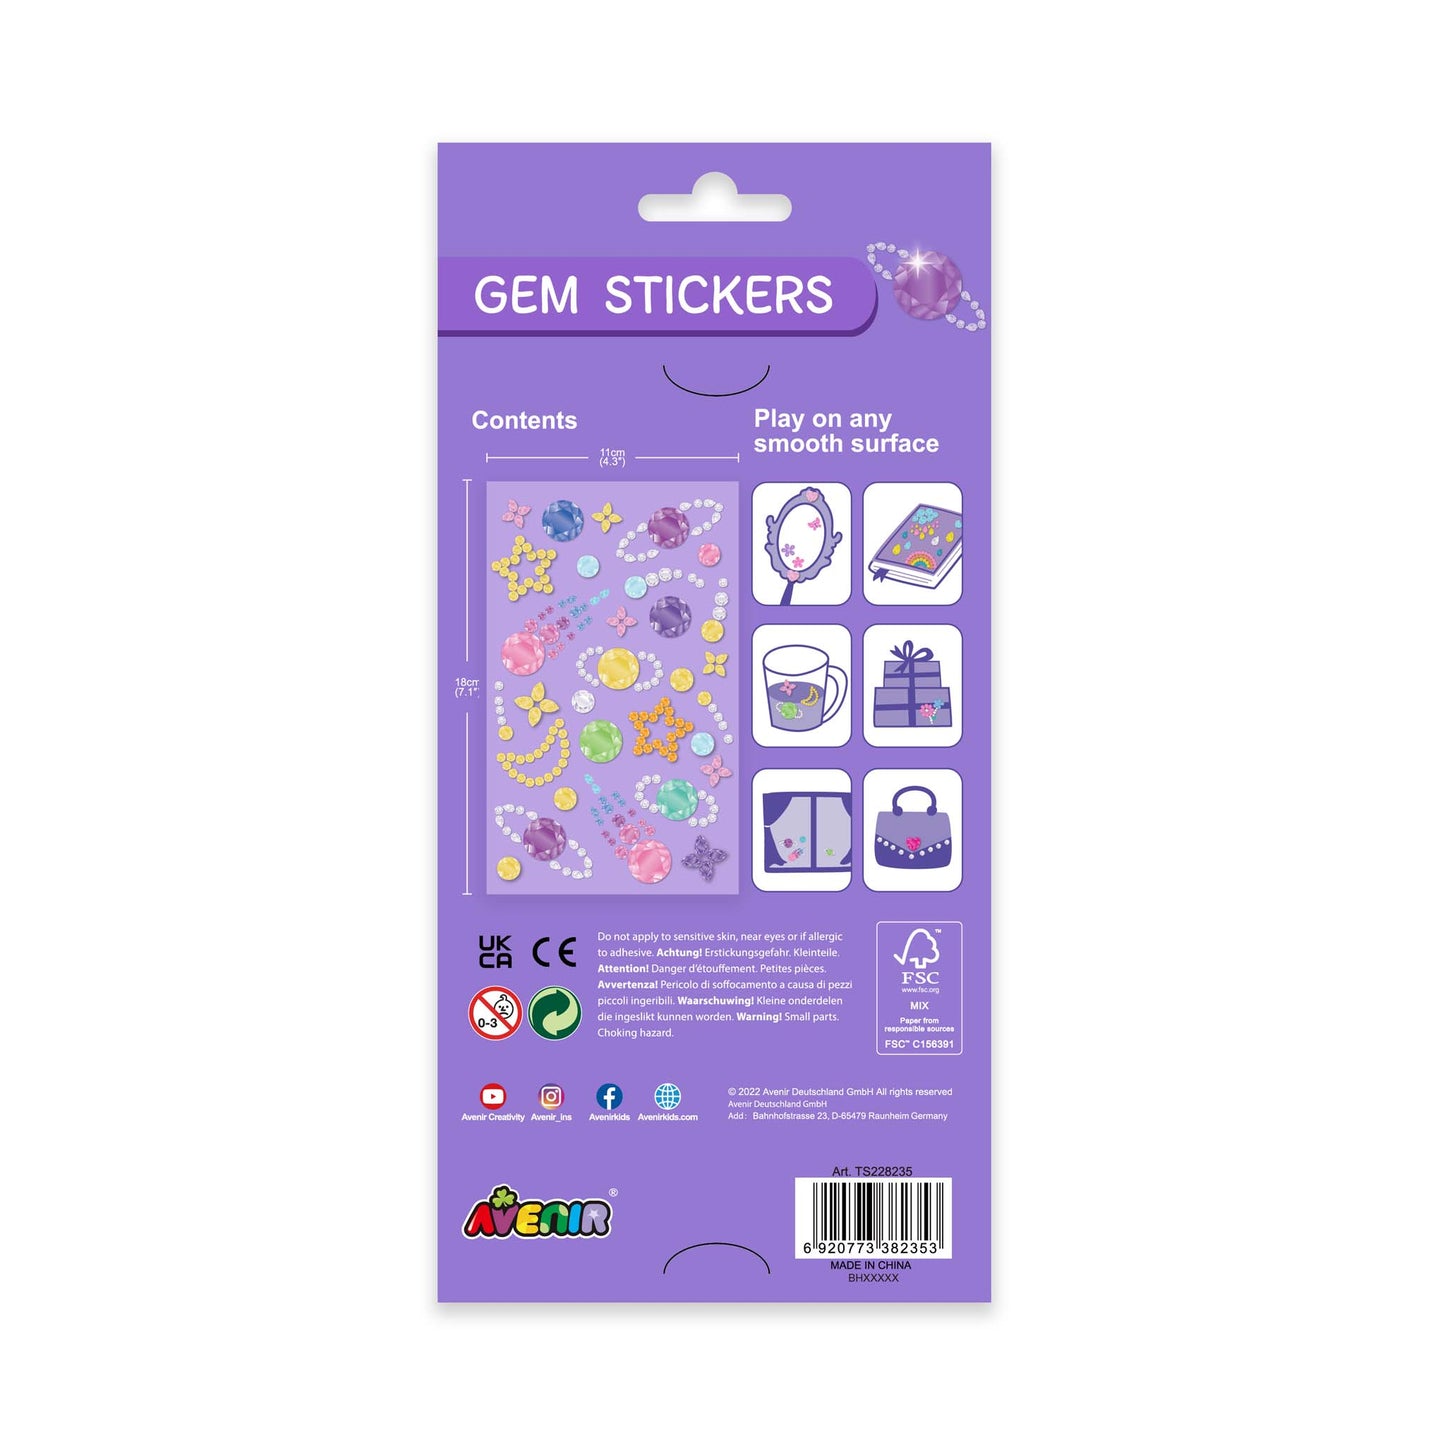 Gem Stickers Galaxy